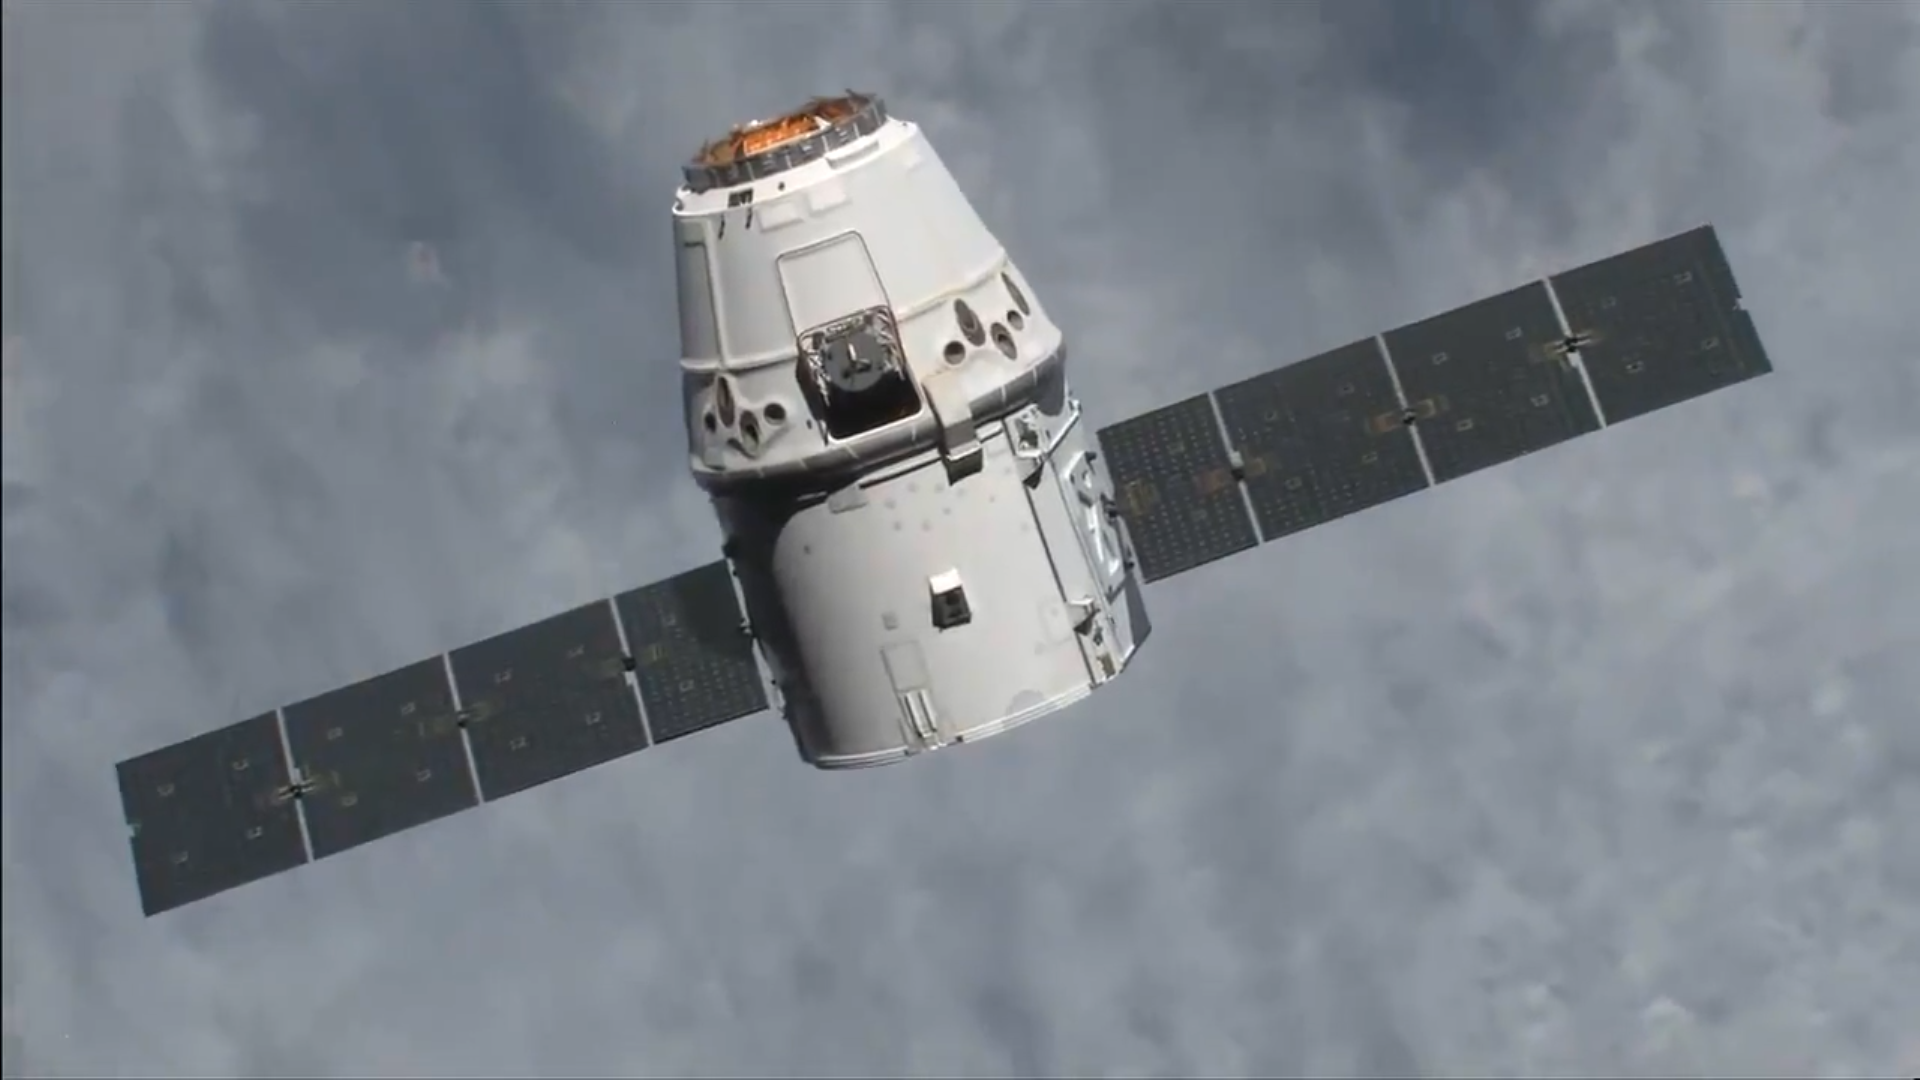 Ładunkowa kapsułka SpaceX Dragon pomyślnie sprowadziła na Ziemię myszy i inny ładunek